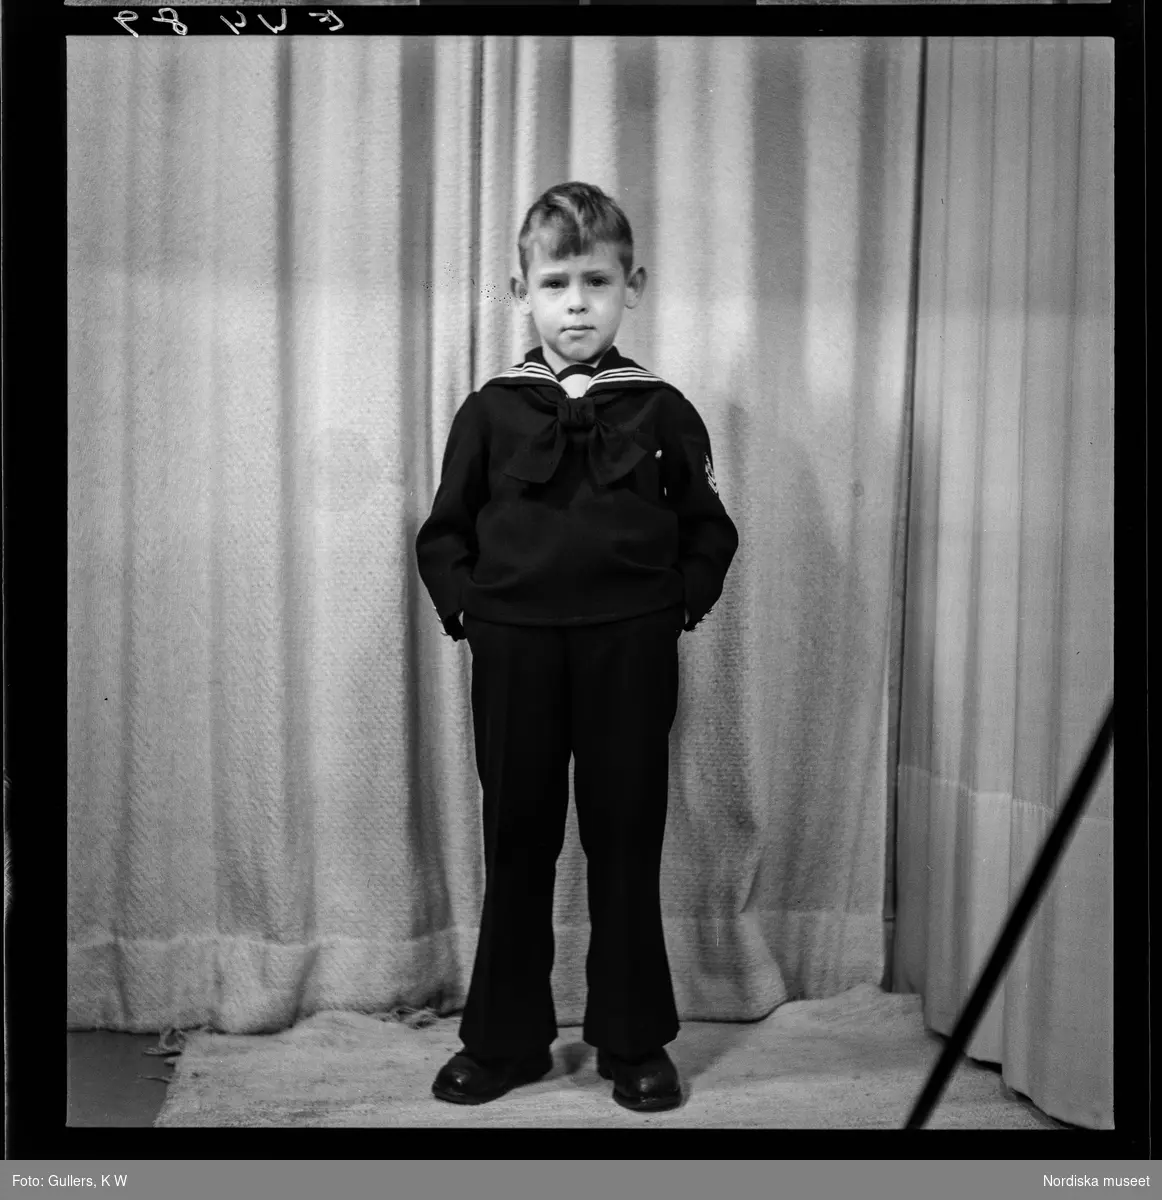 513 Karlströmer med fru och son. Porträtt av pojke i fotostudio.